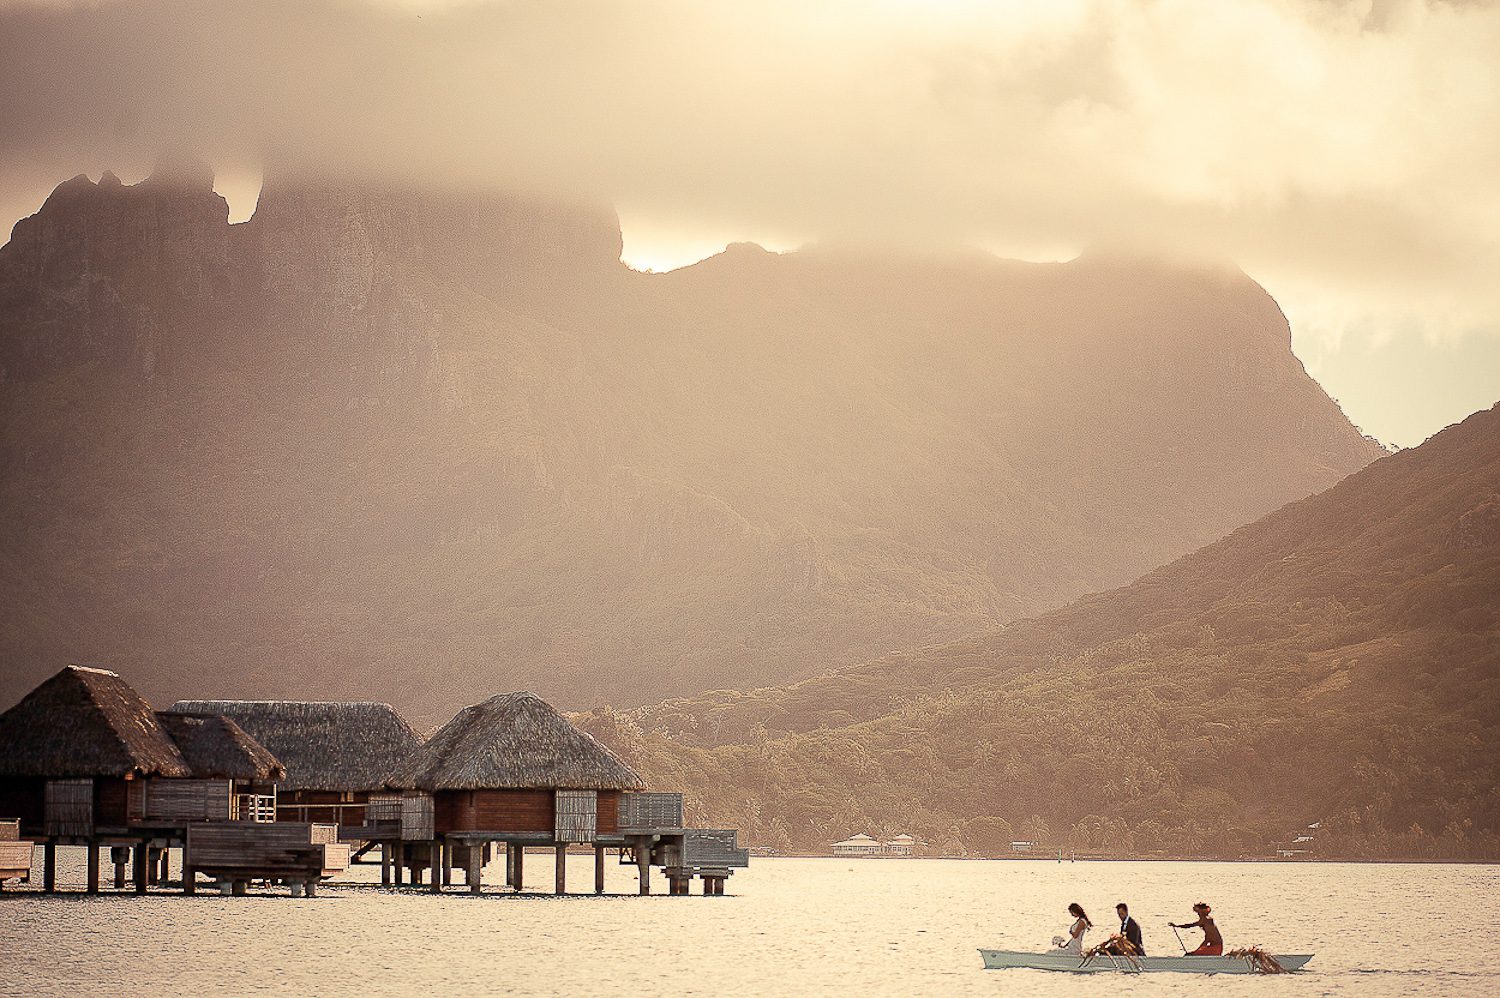 Stylish Photoshooting - Bora Bora photographer